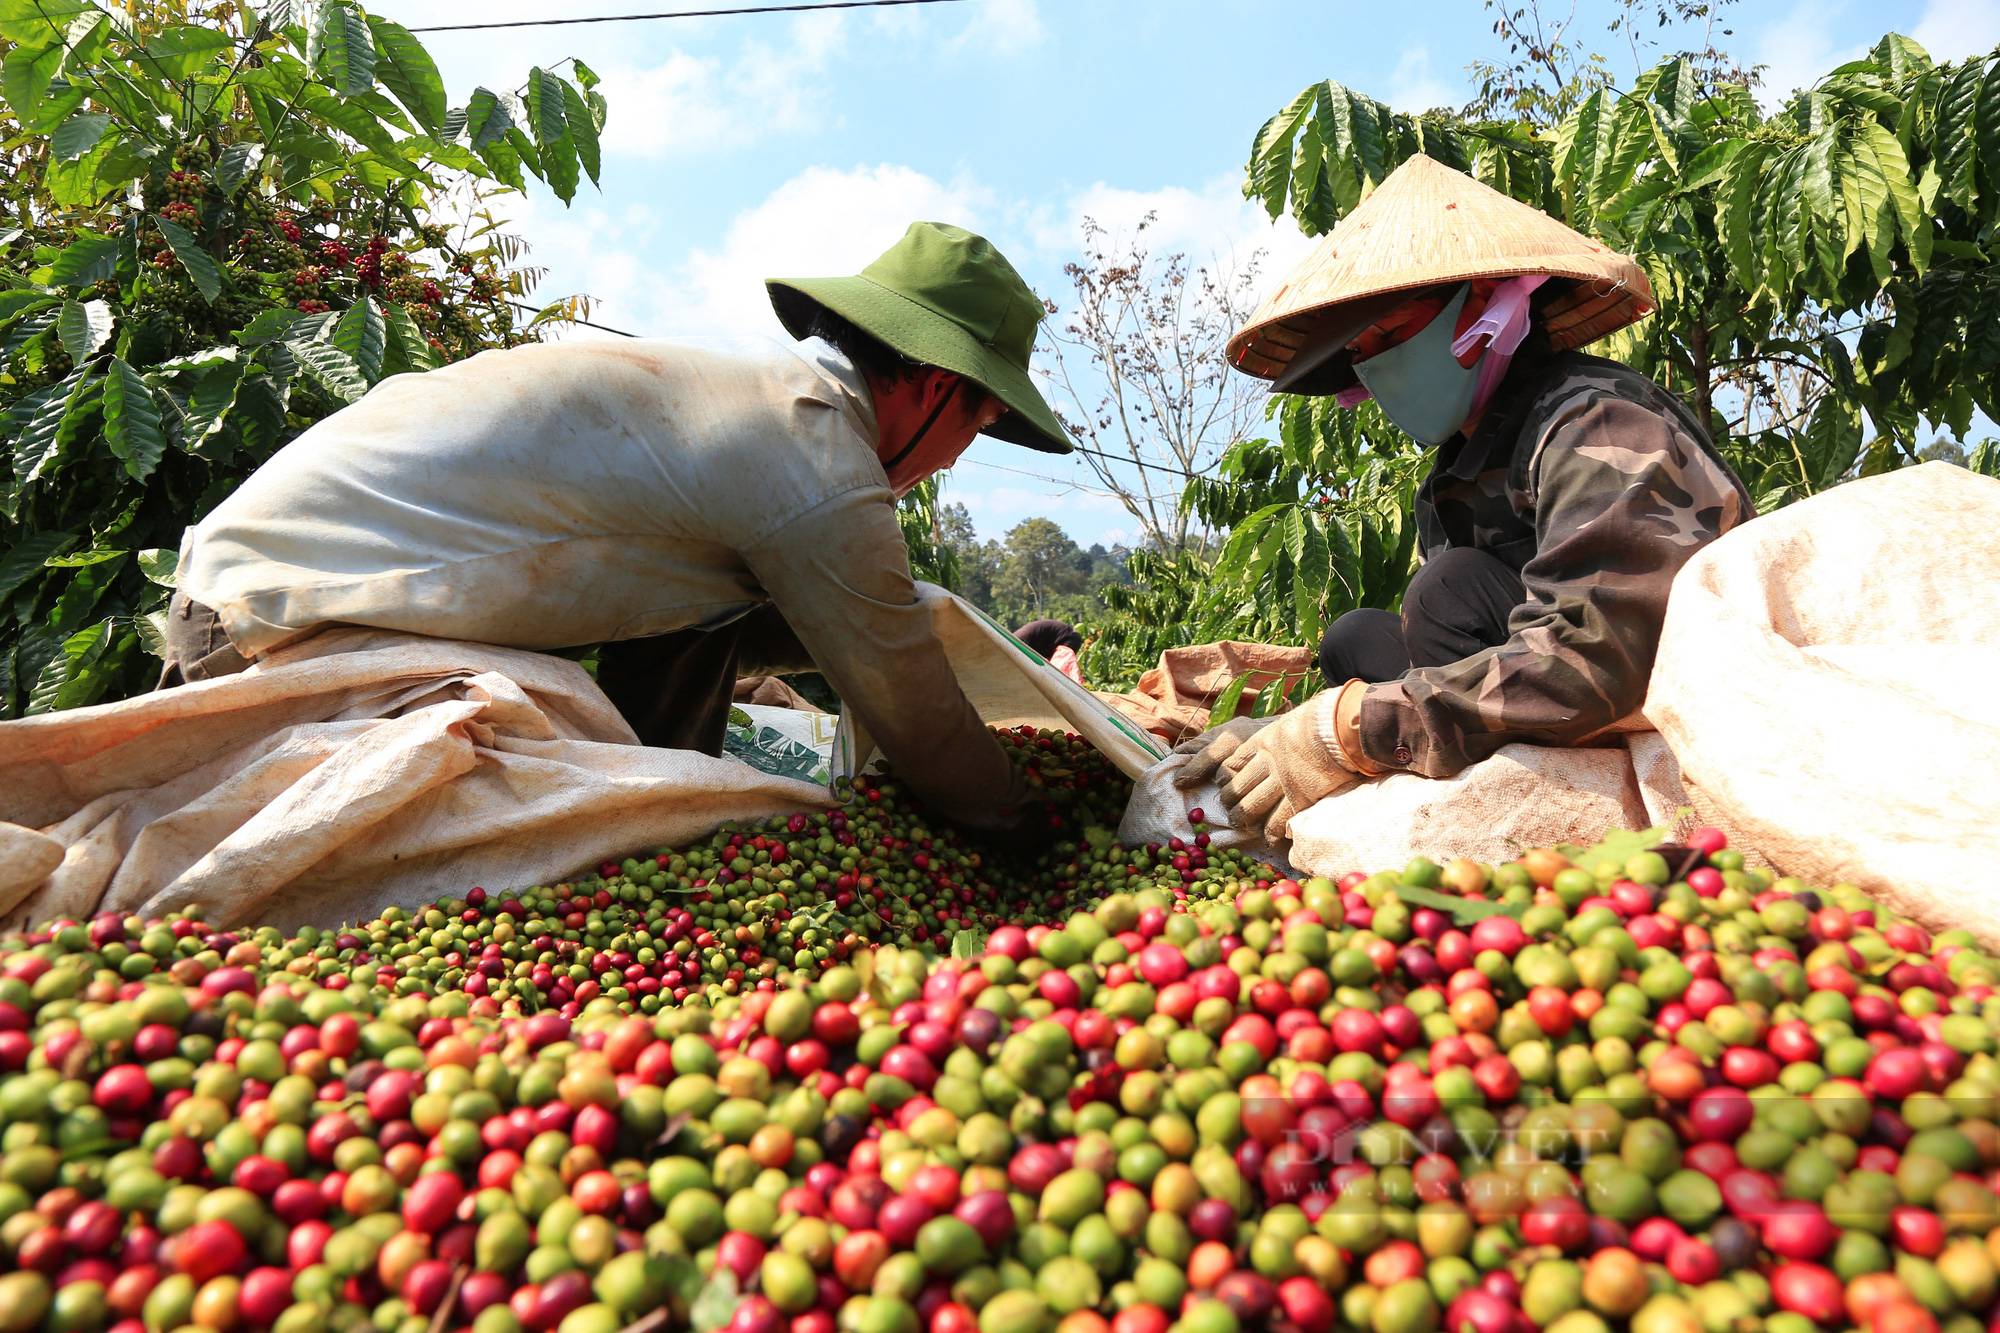 Giá cà phê Robusta Đắk Lắk tăng trở lại, vì sao nên trồng cây chắn gió cho cà phê? - Ảnh 2.